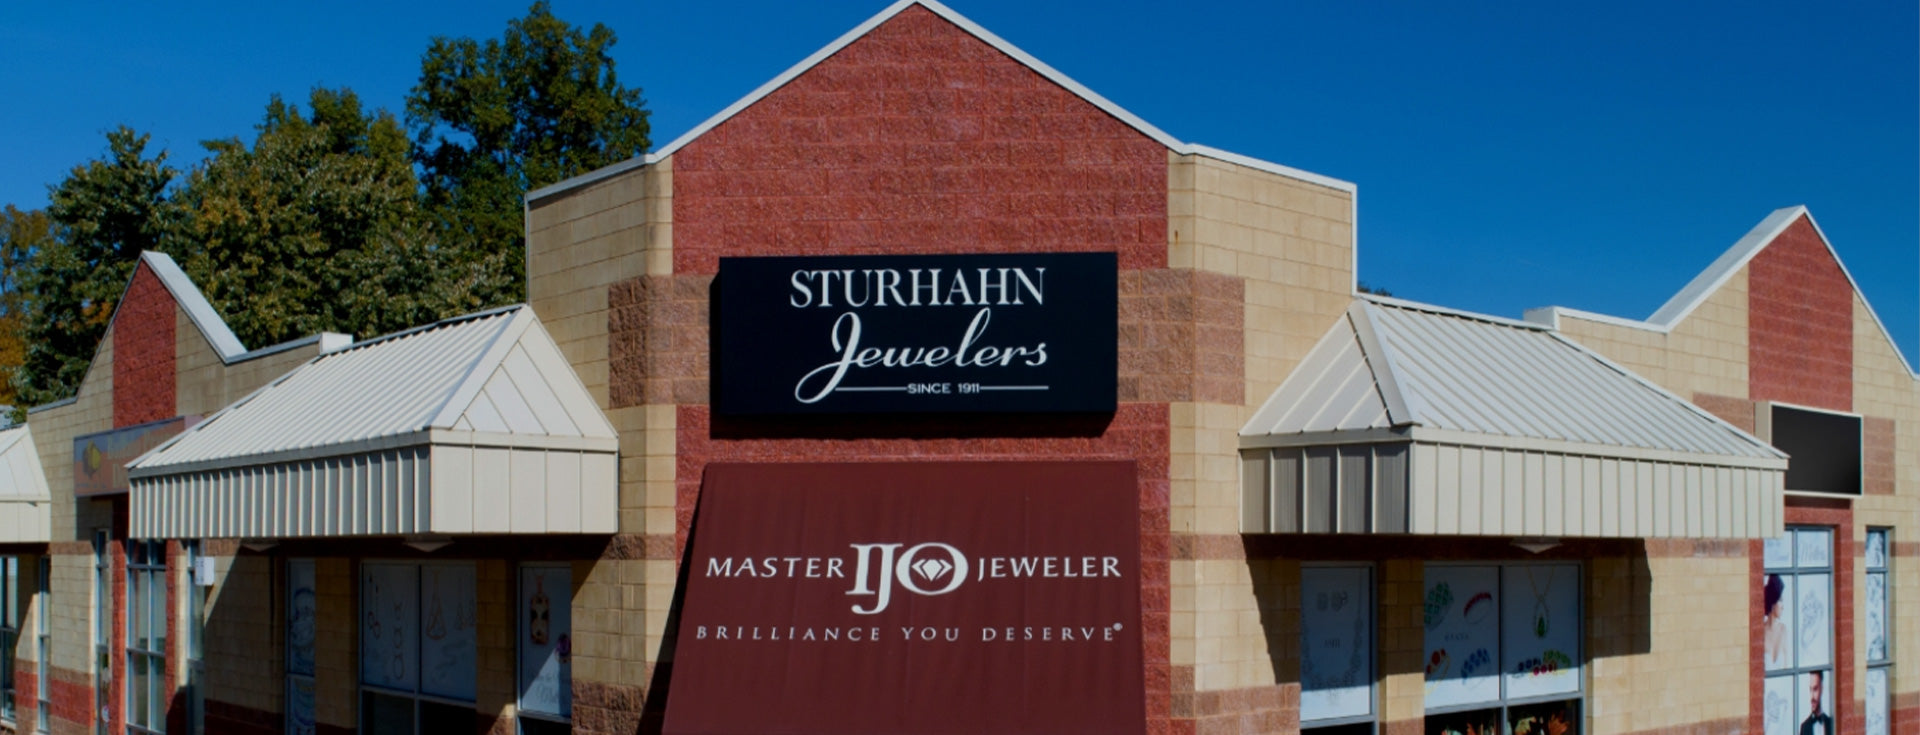 sturhahn jewelers store